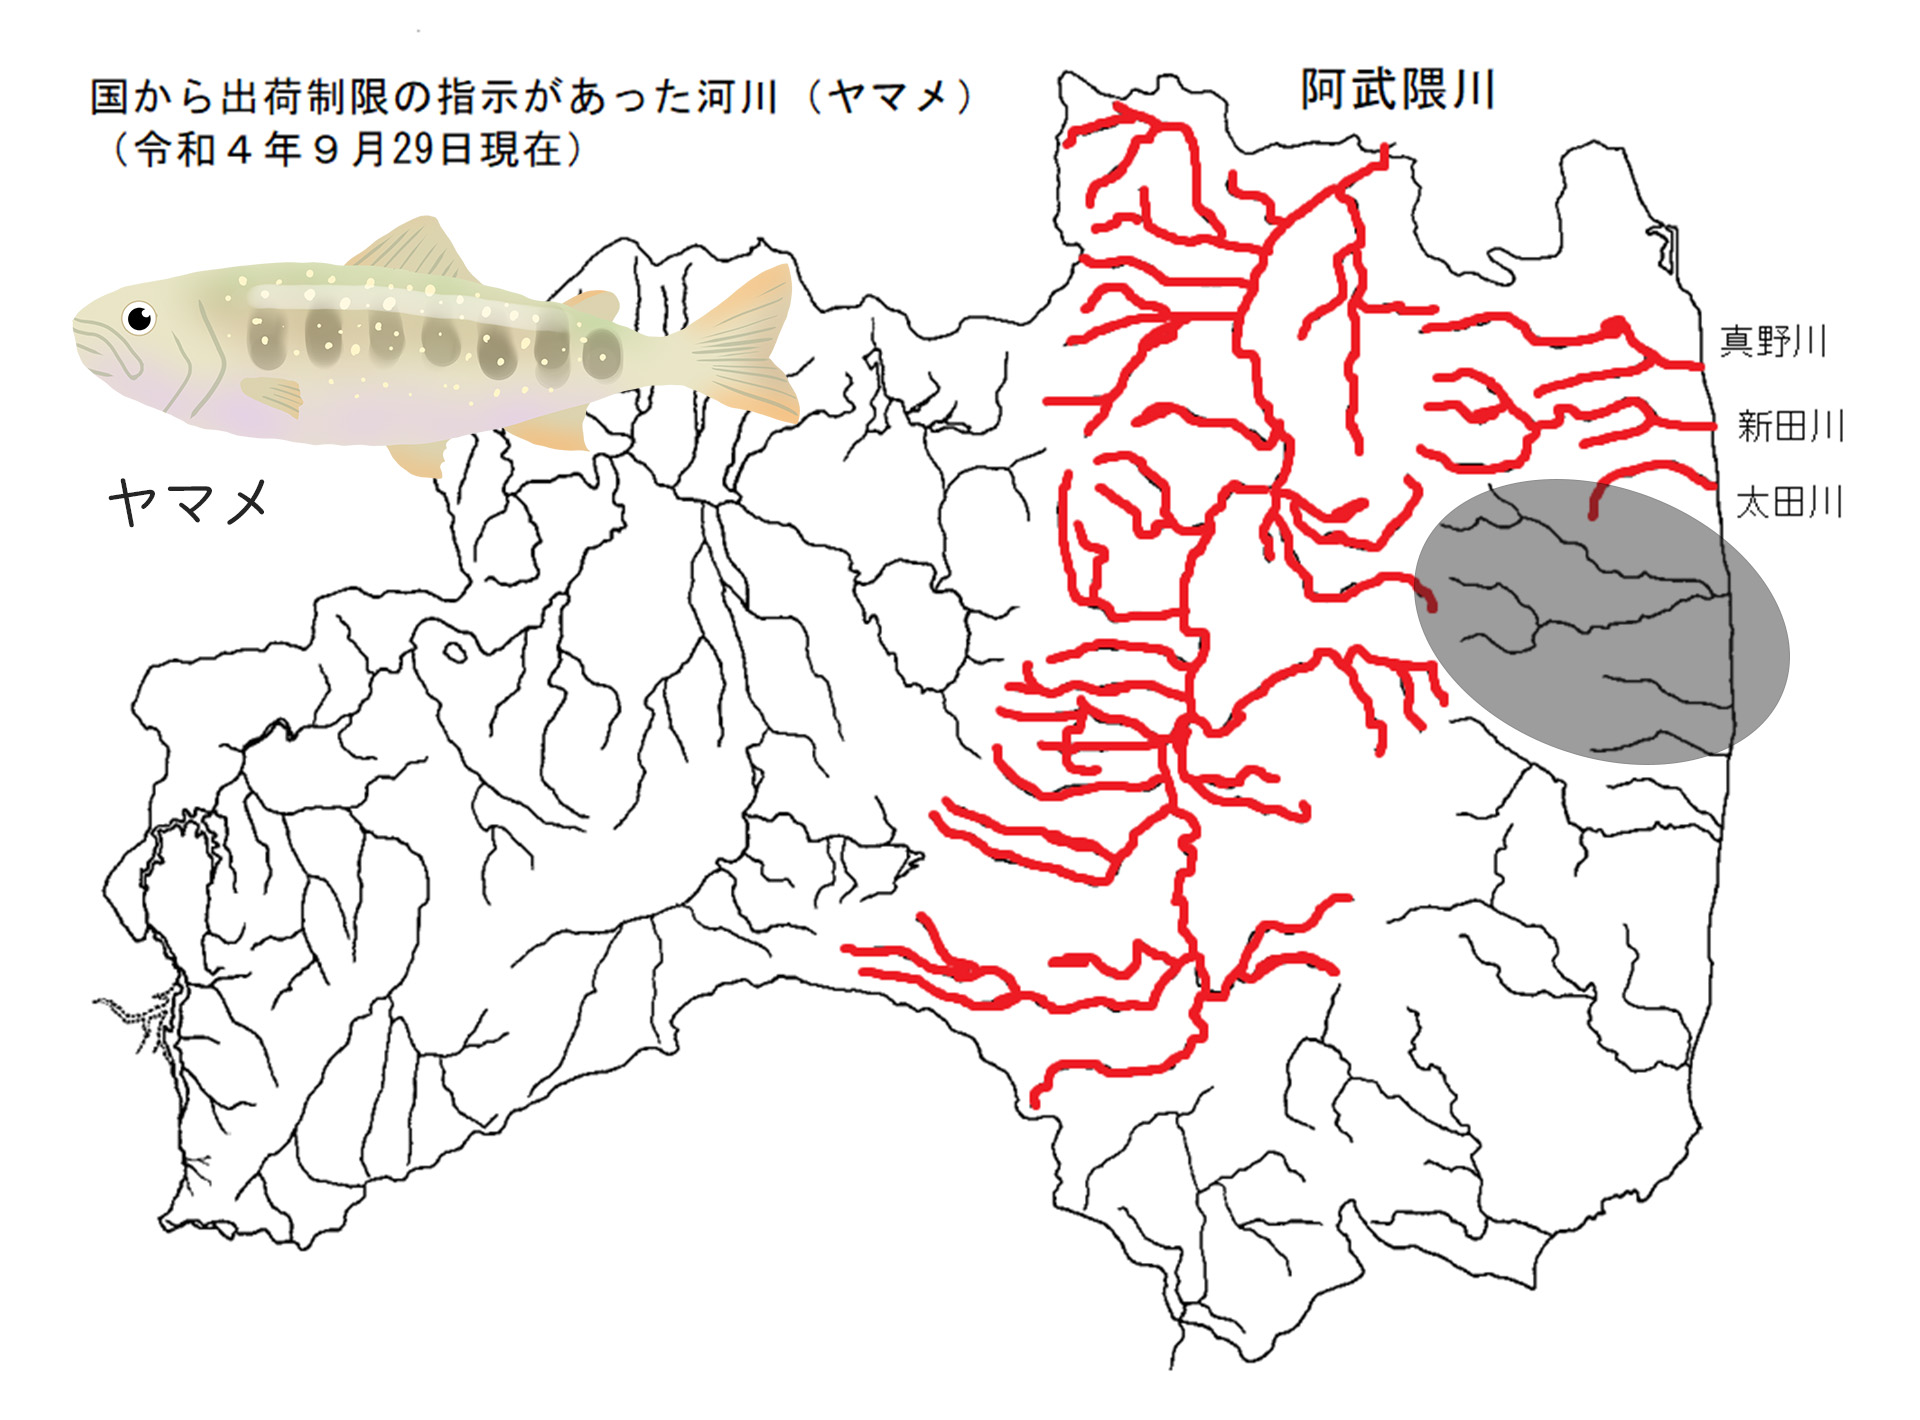 ヤマメの出荷制限河川を赤で表示した福島県の地図